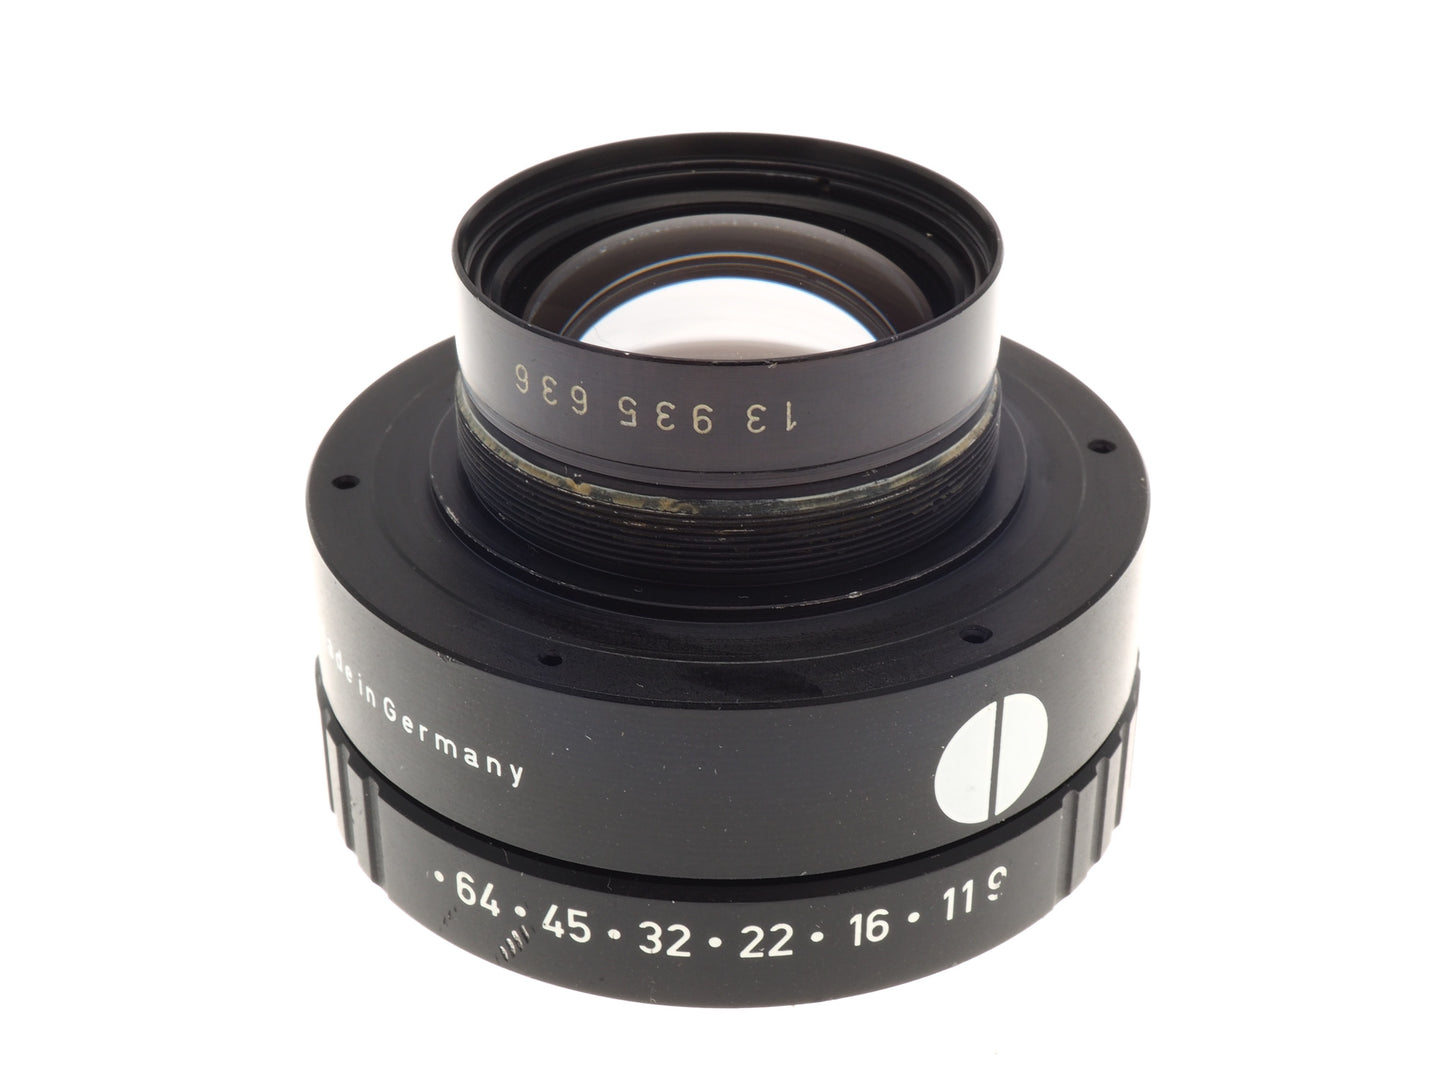 Schneider-Kreuznach 150mm f9 G-Claron - Lens